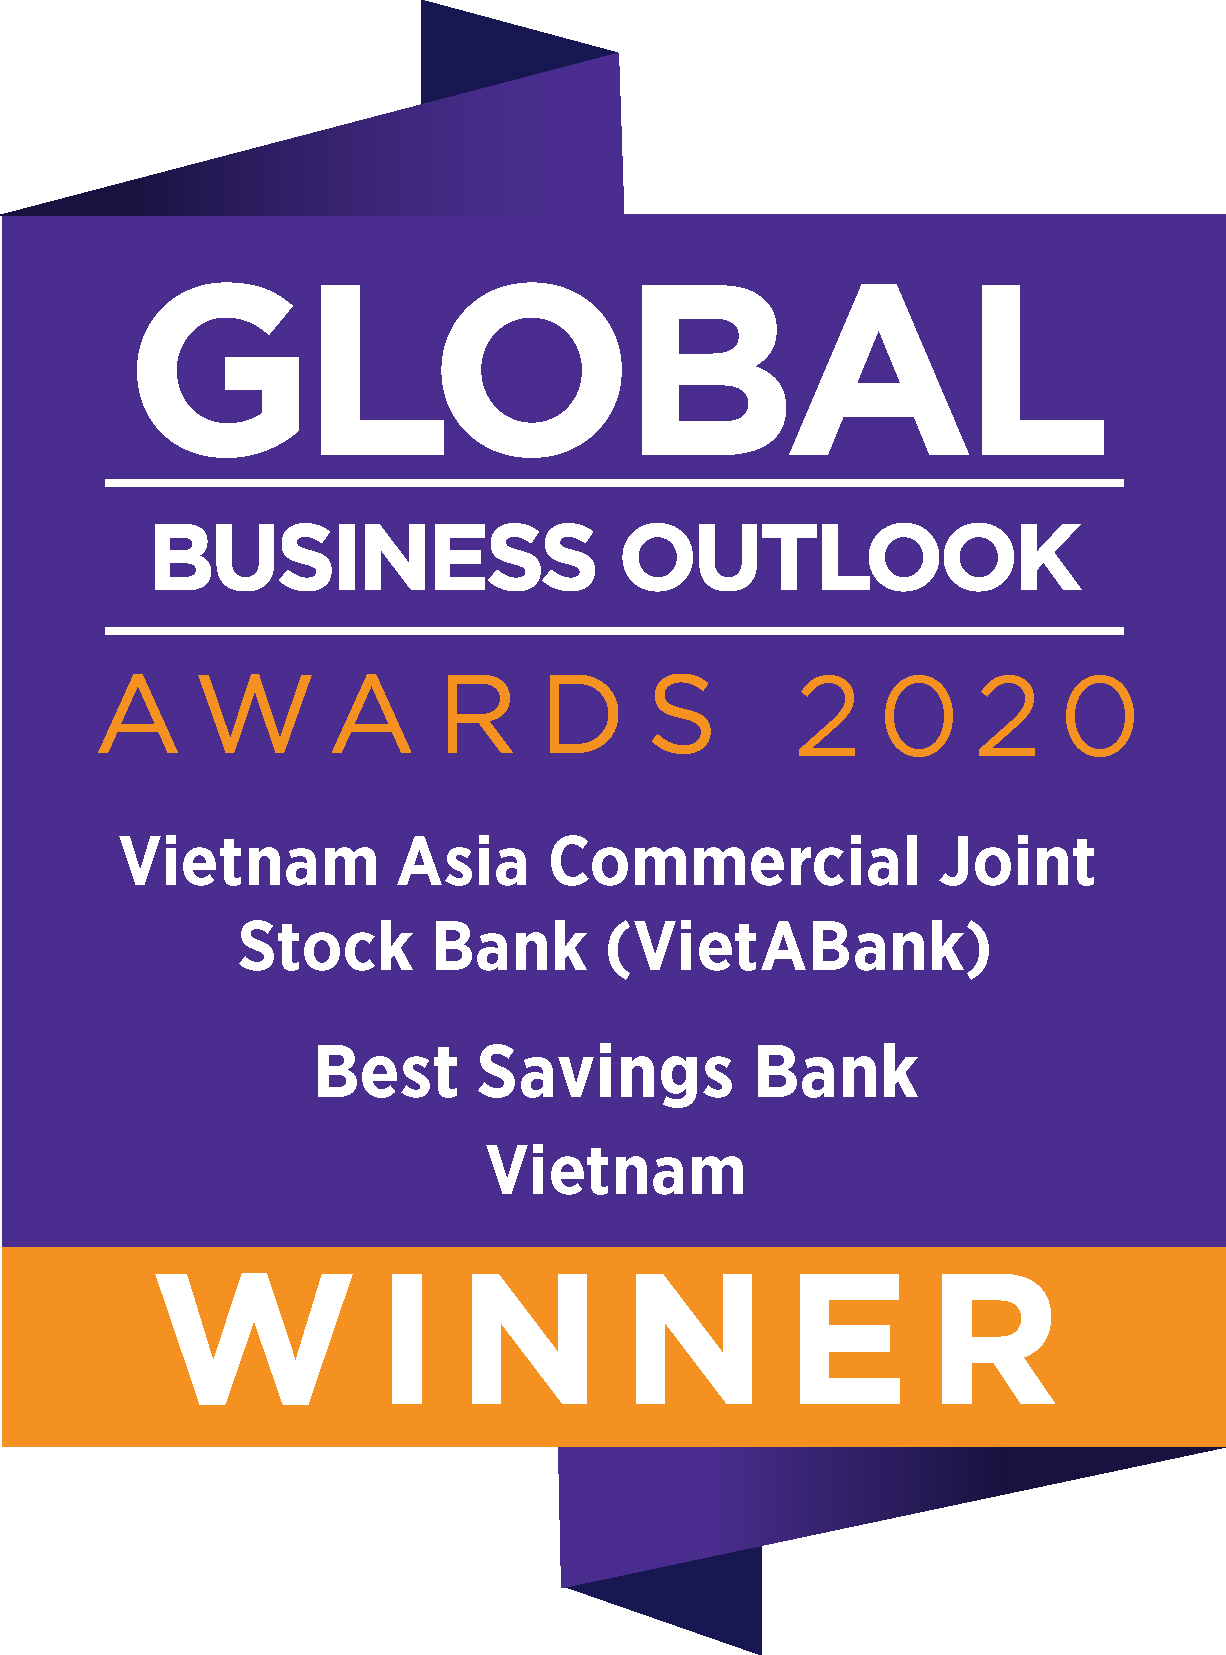 Best Savings Bank Vietnam 2020 - Ngân hàng có sản phẩm tiết kiệm tốt nhất Việt Nam 2020